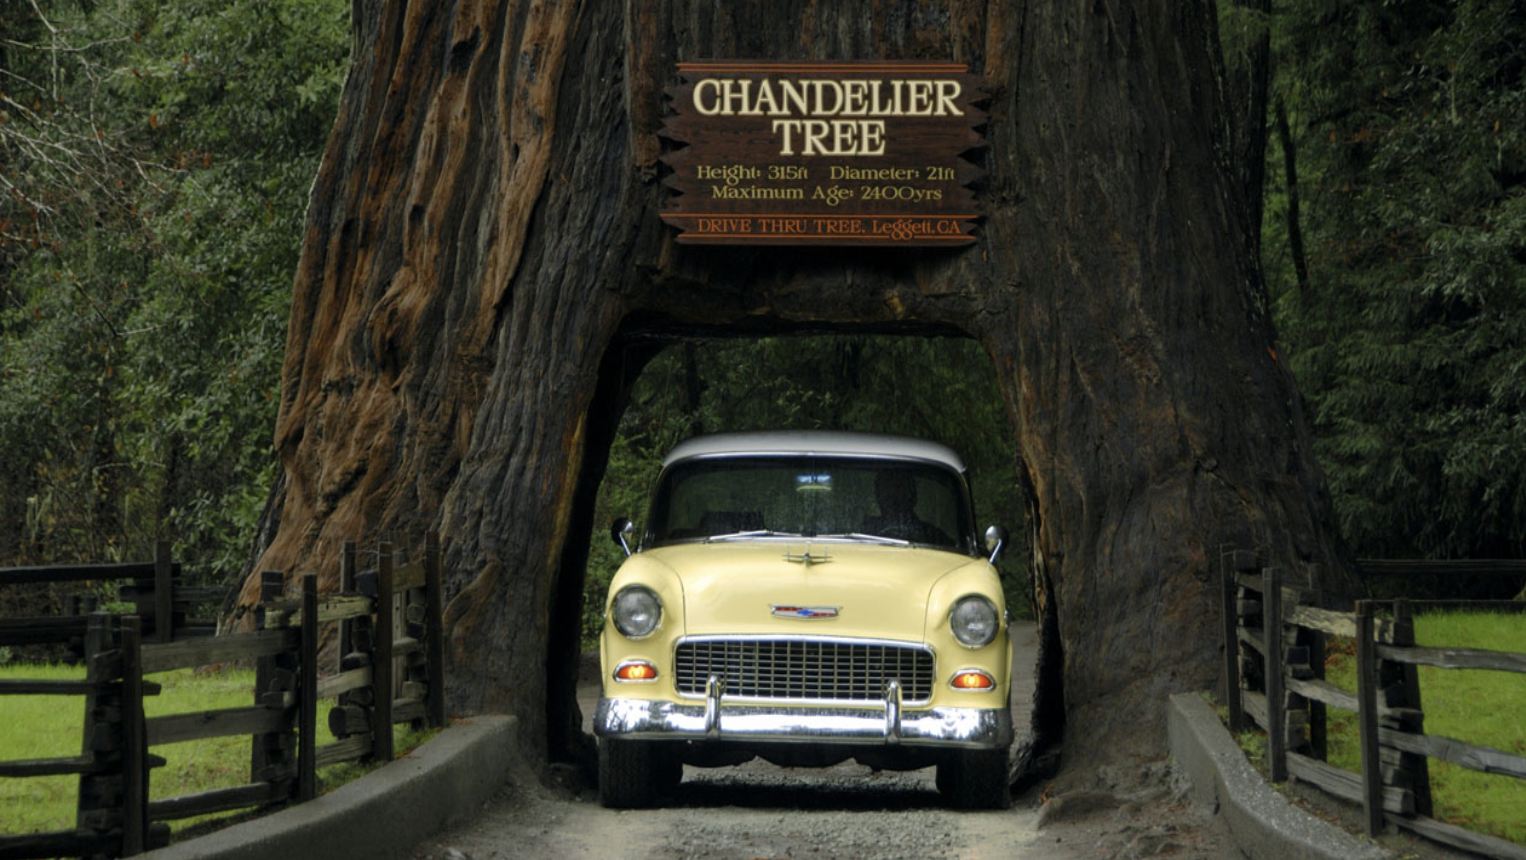 Chandelier drive thru tree